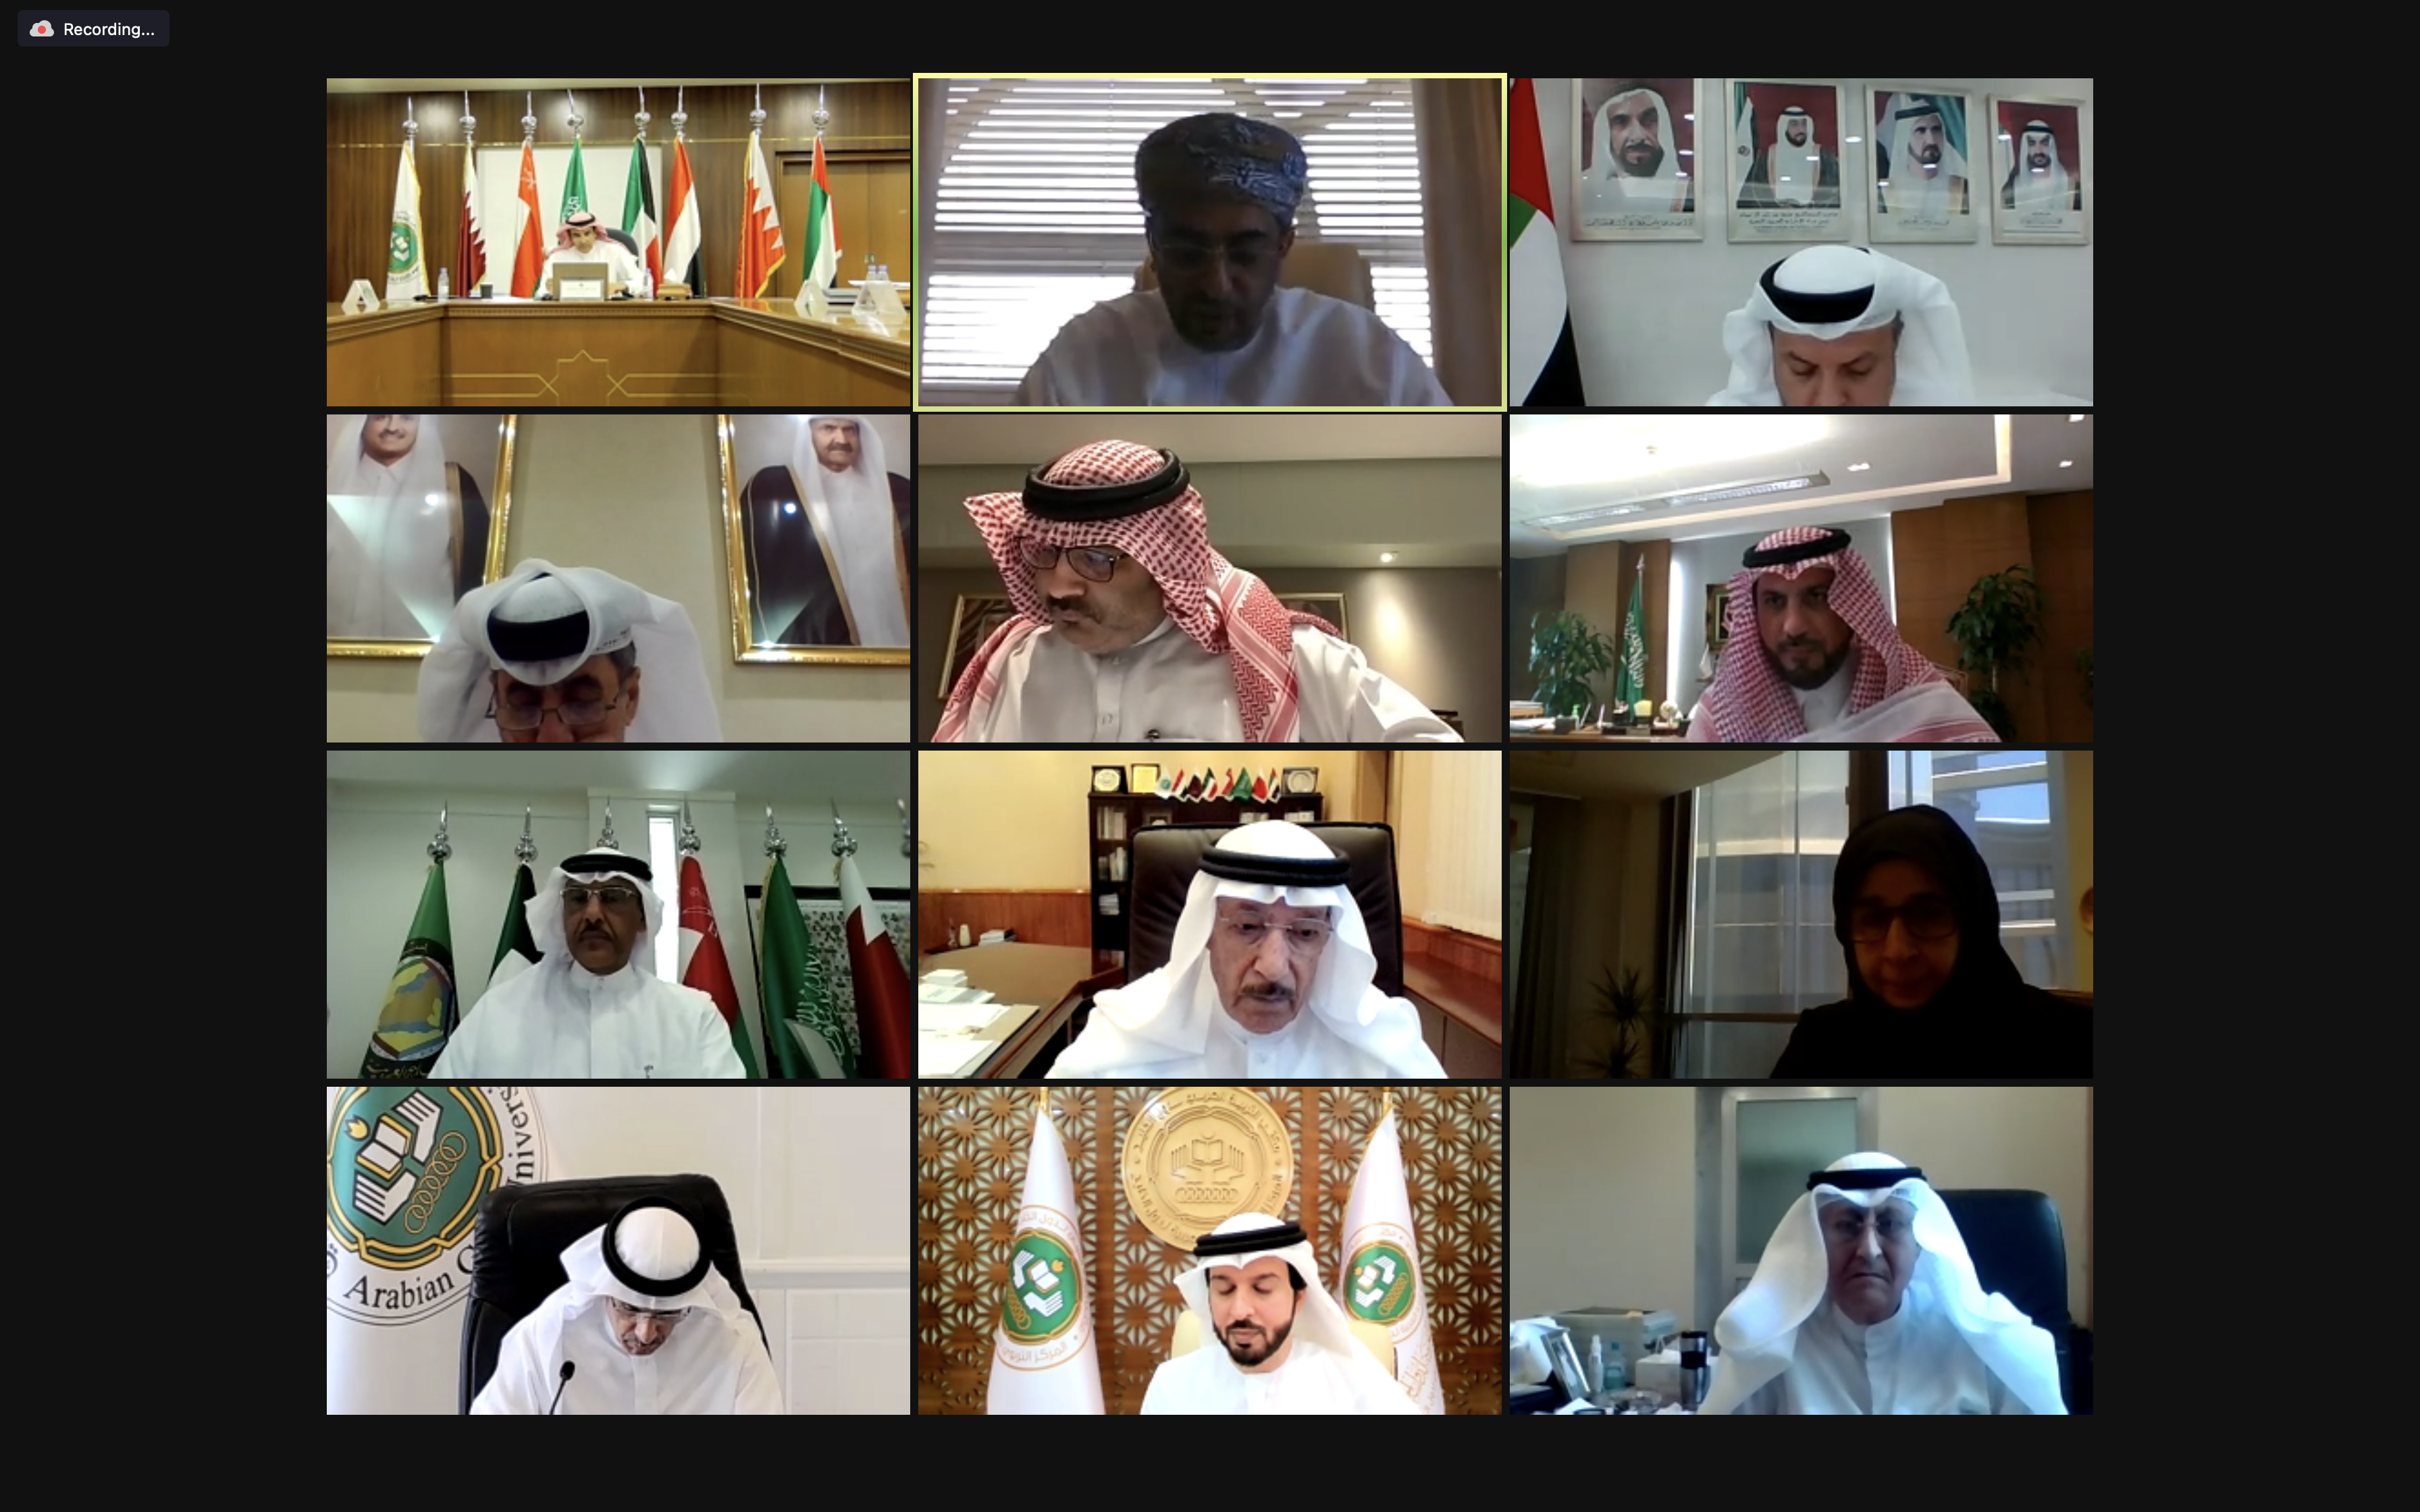 المجلس التنفيذي لمكتب التربية العربي لدول الخليج يعقد اجتماعه للدورة الثامنة والثمانين 